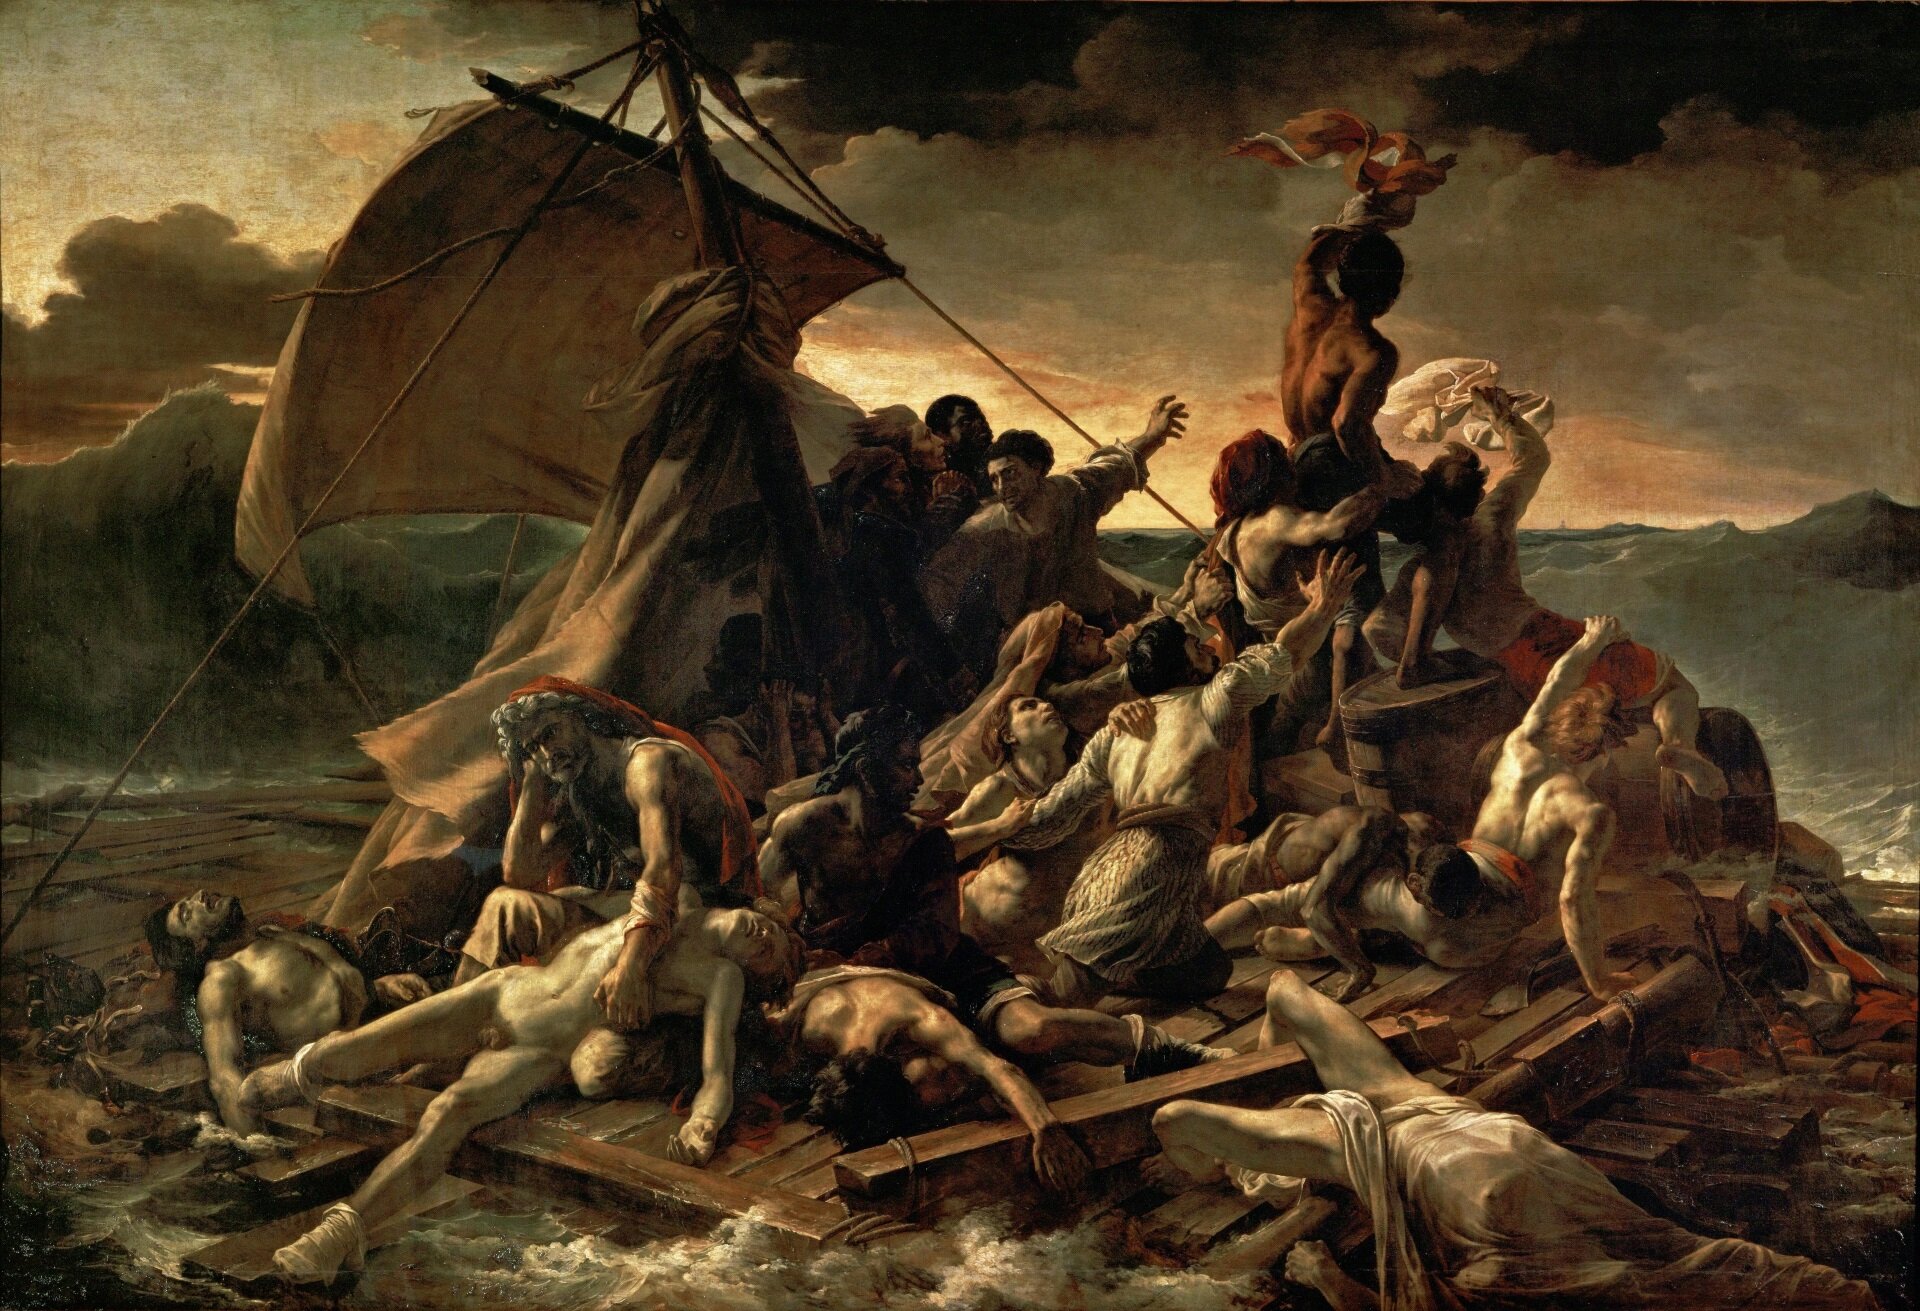 lustracja przedstawia obraz Théodore’a Géricault „Tratwa Meduzy”. Na obrazie widoczni są rozbitkowie ze statku Meduza. Ludzie znajdują się na drewnianej tratwie, która płynie po wzburzonym morzu. W oddali widoczny jest okręt, do którego rozbitkowie machają. Ocean jest wzburzony, a niebo pokrywają ciemne chmury.